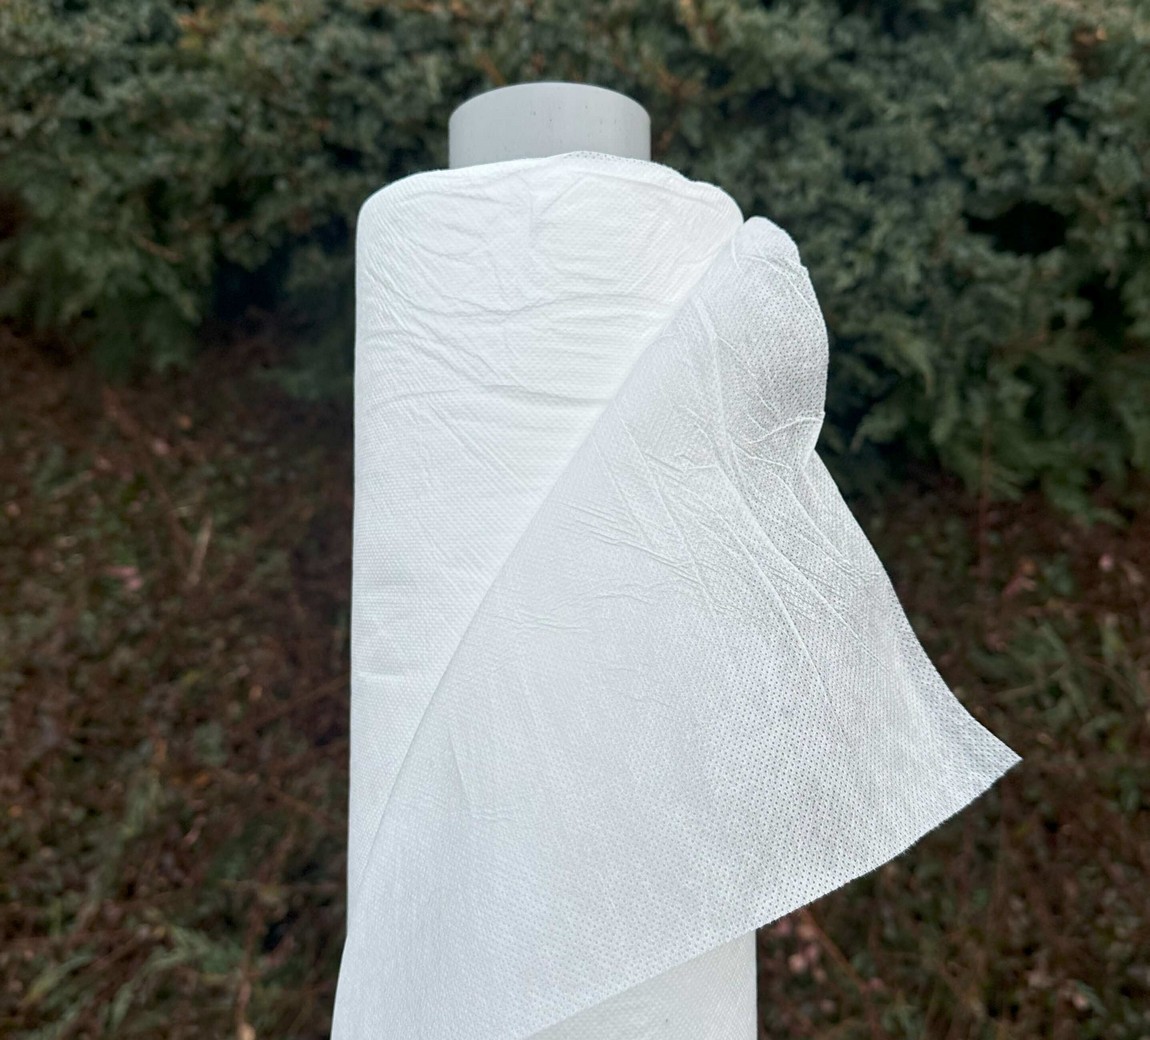 Jutabond Netkaná textílie proti mrazu, 50g/m2, 100m x 3,2m - bílá EXTRA SILNÁ ZAHRADA Sklad6 0376